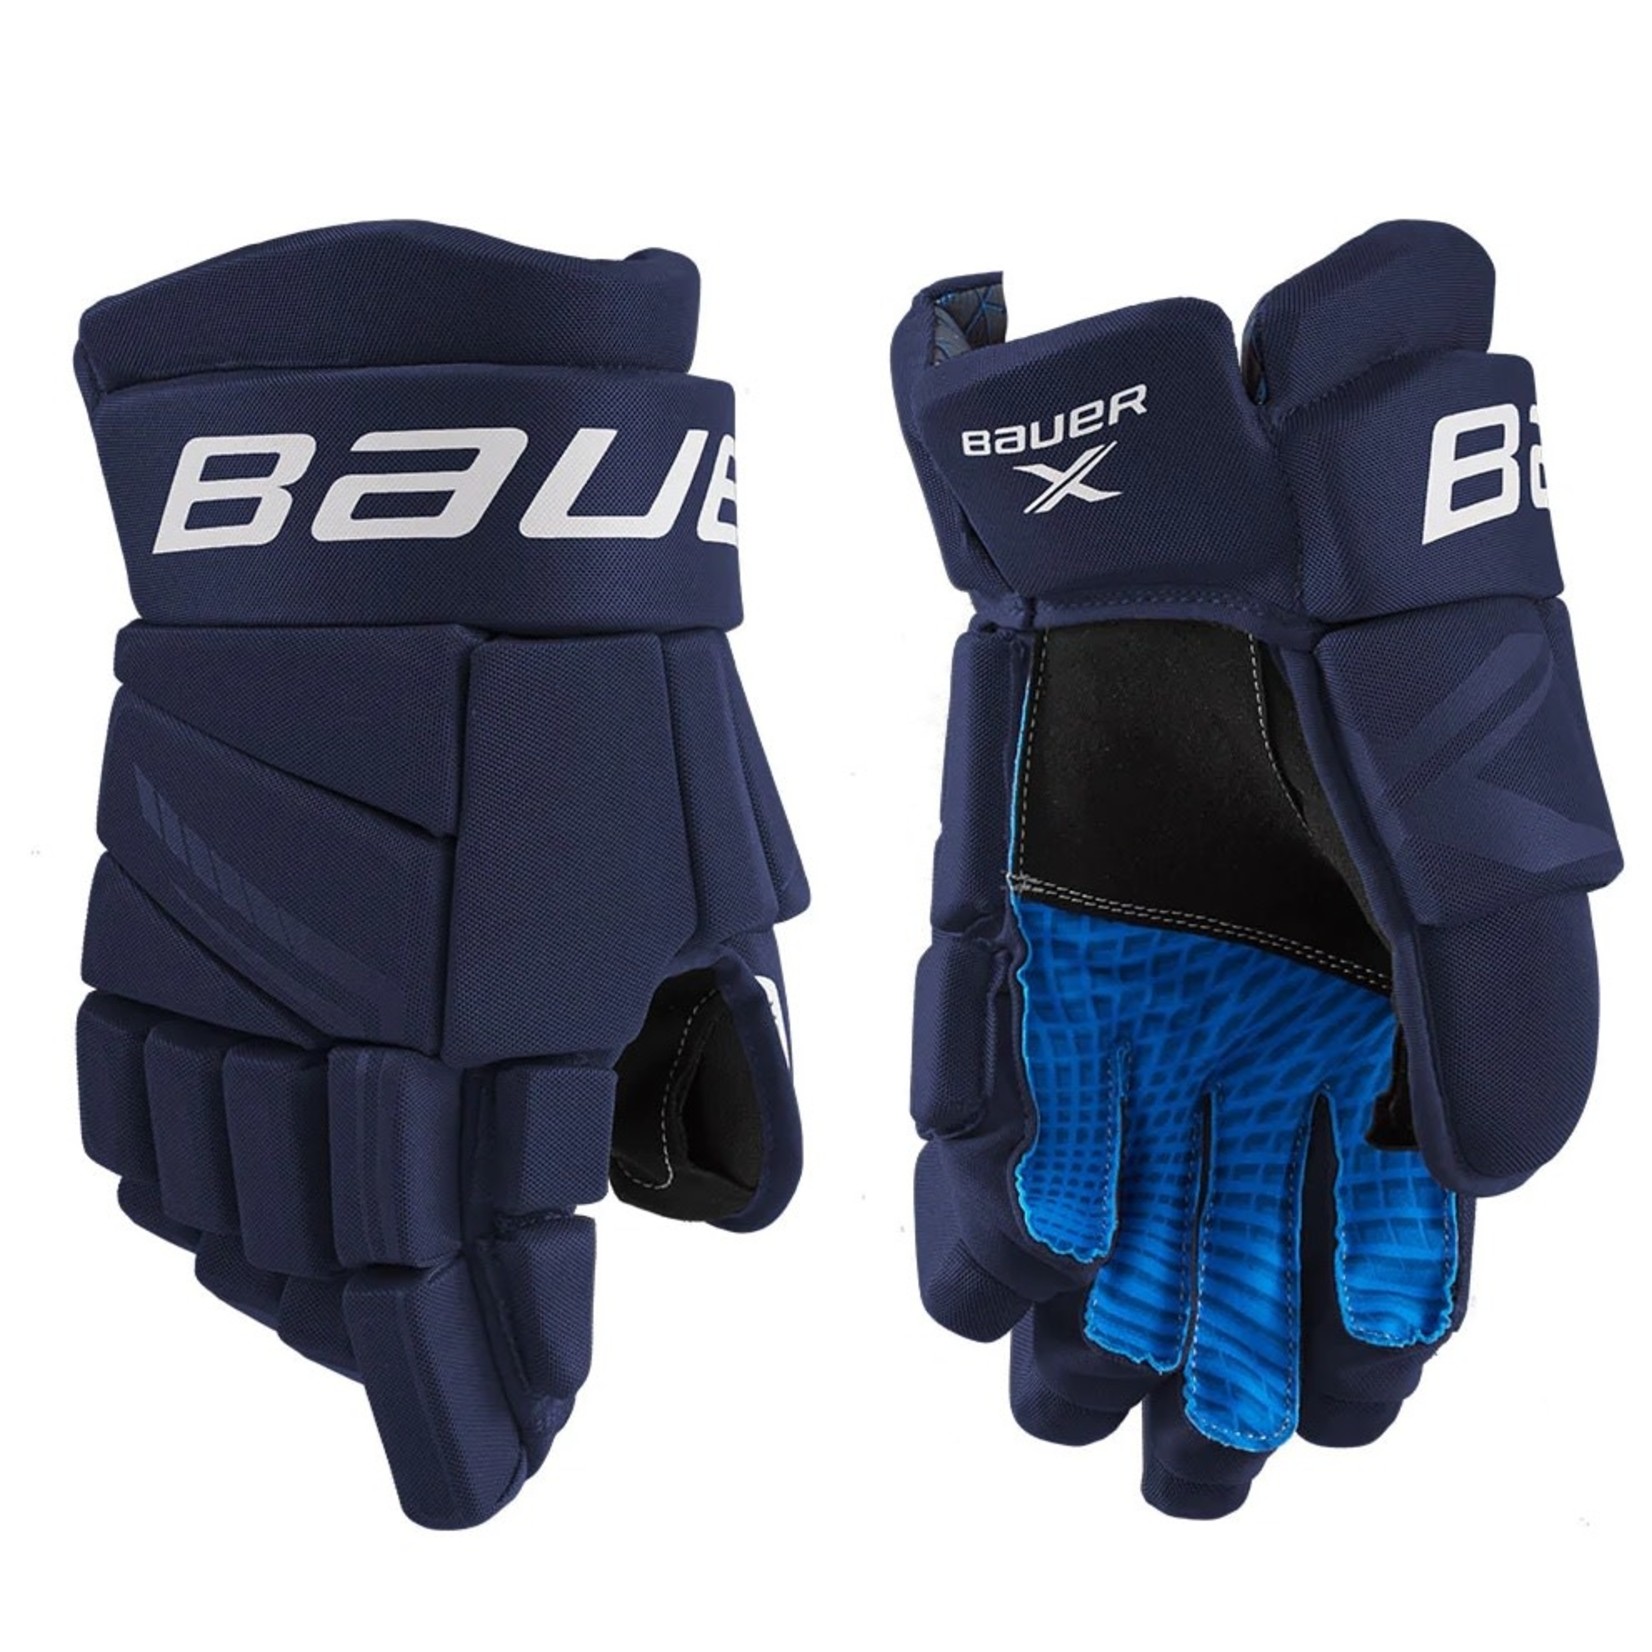 Bauer Bauer Hockey Gloves, X, Senior